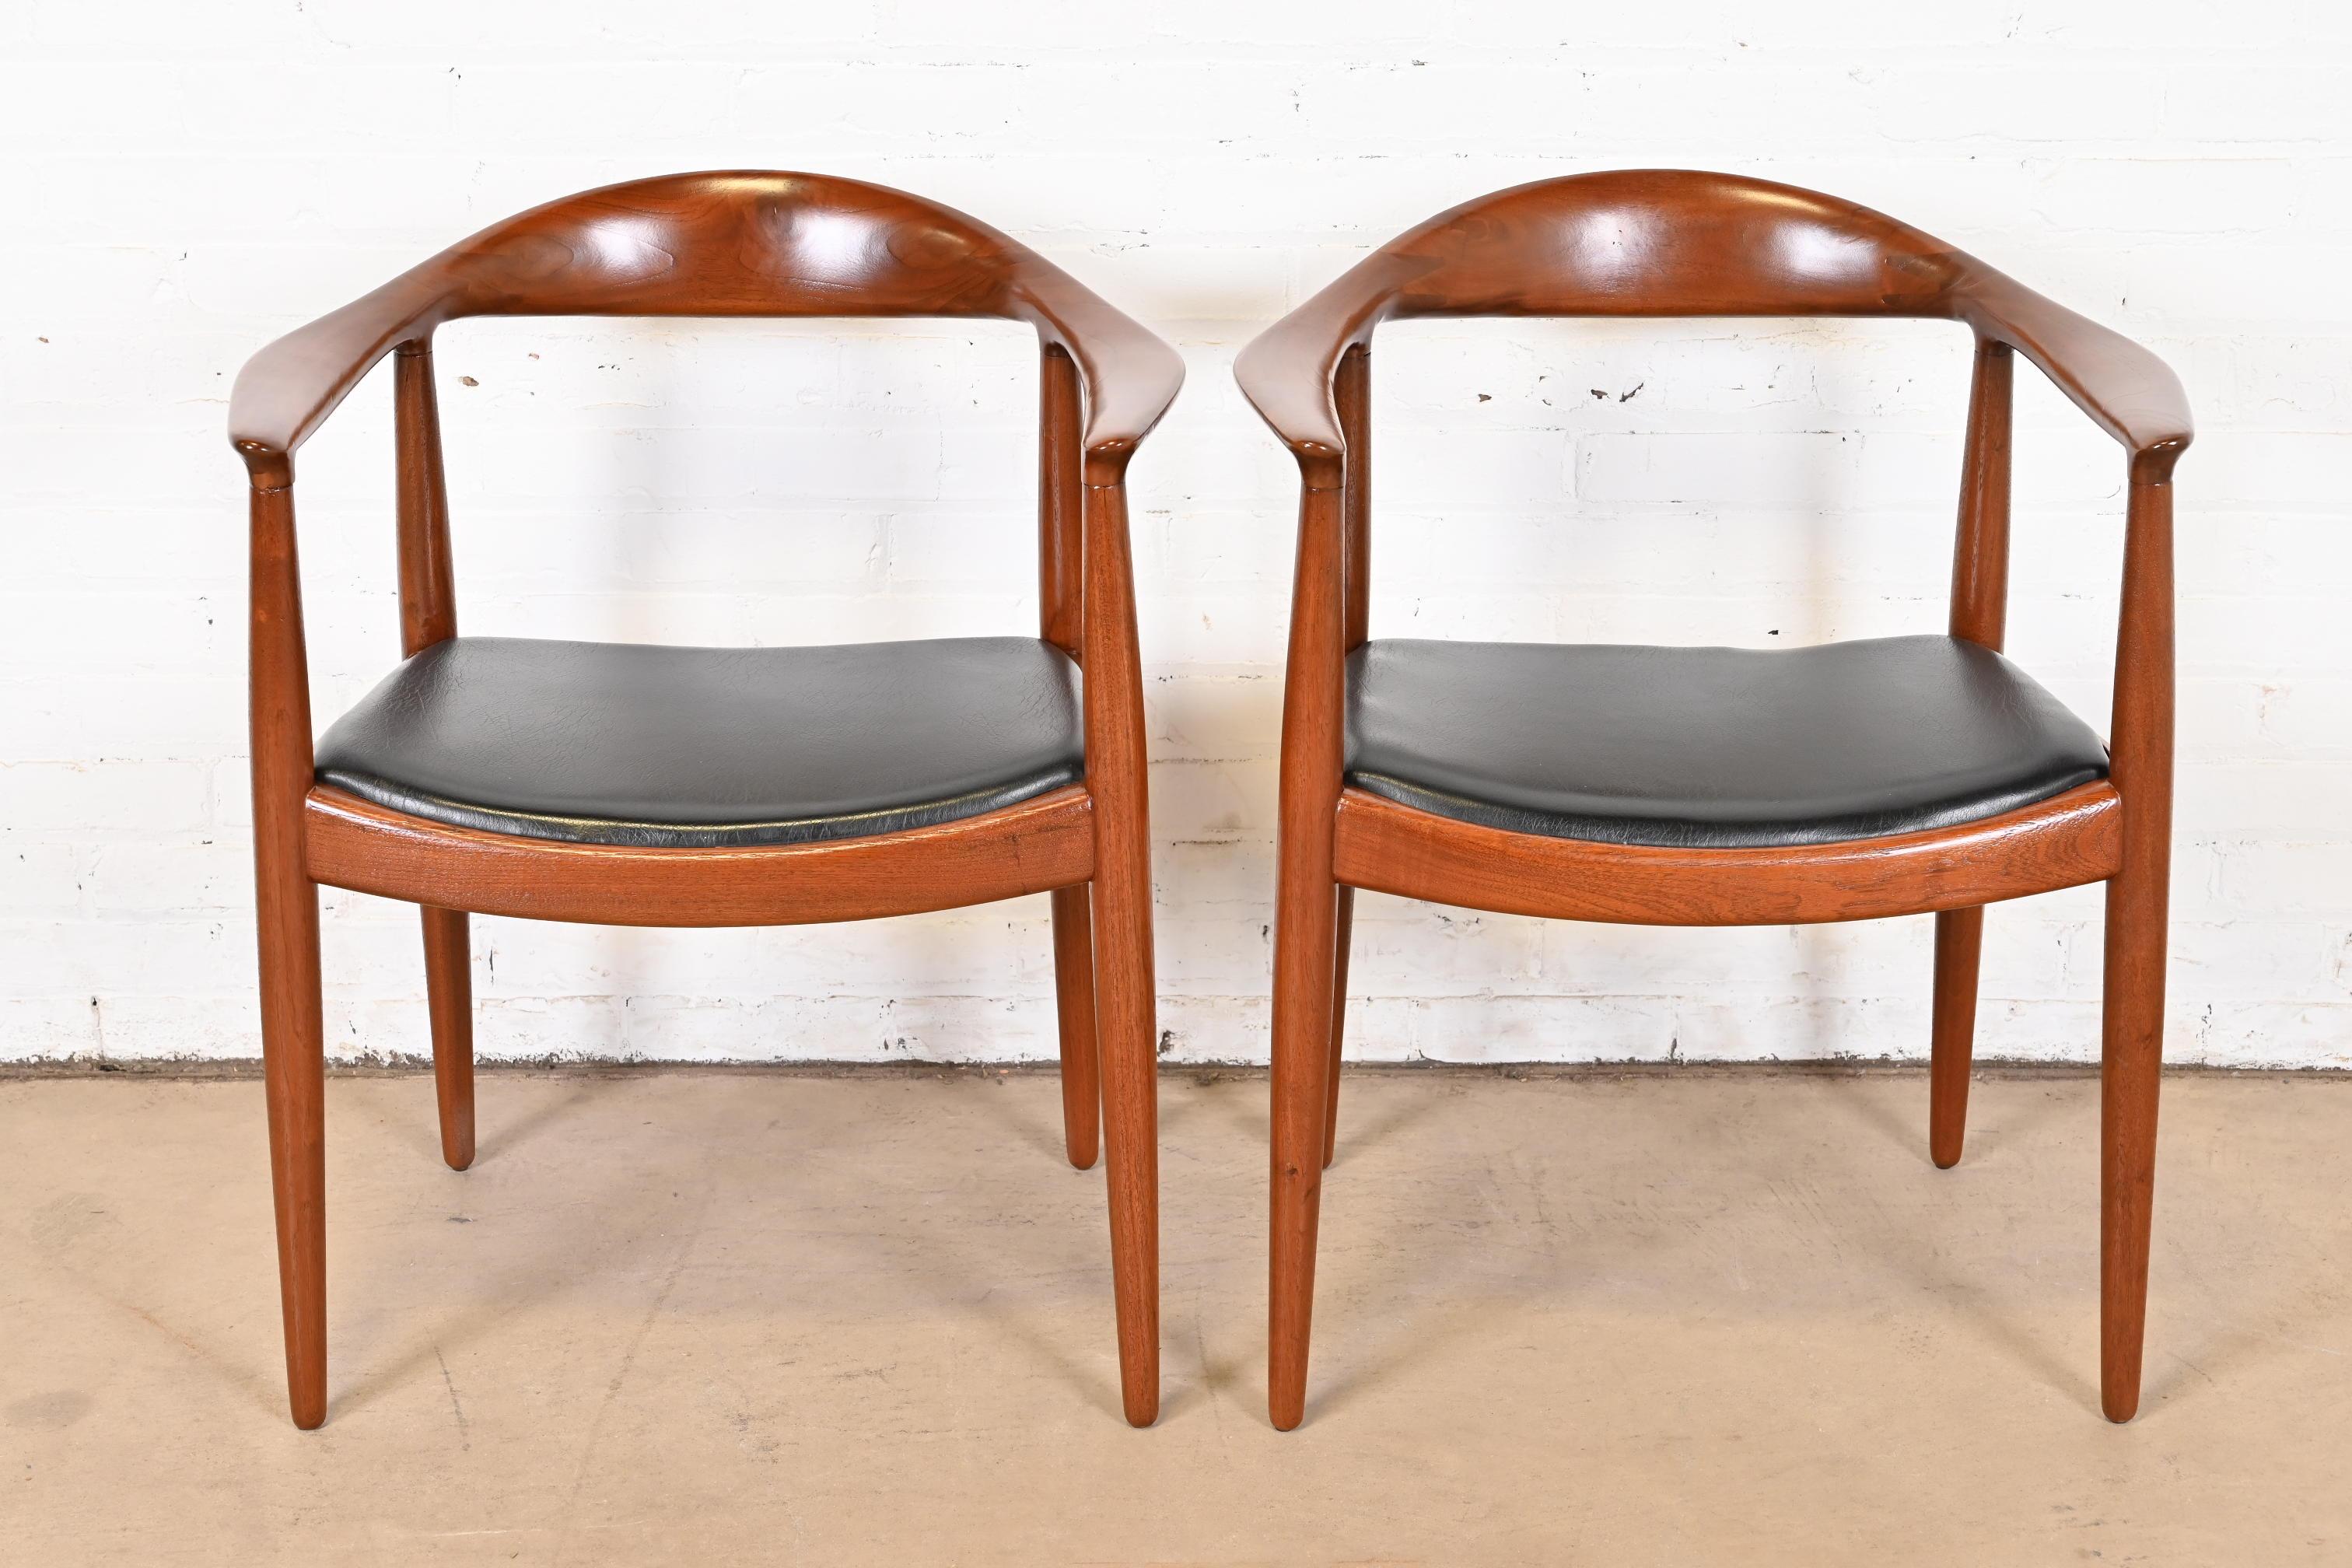 Wir bieten ein seltenes und außergewöhnliches Paar JH 501 Sessel an. Diese meist als 